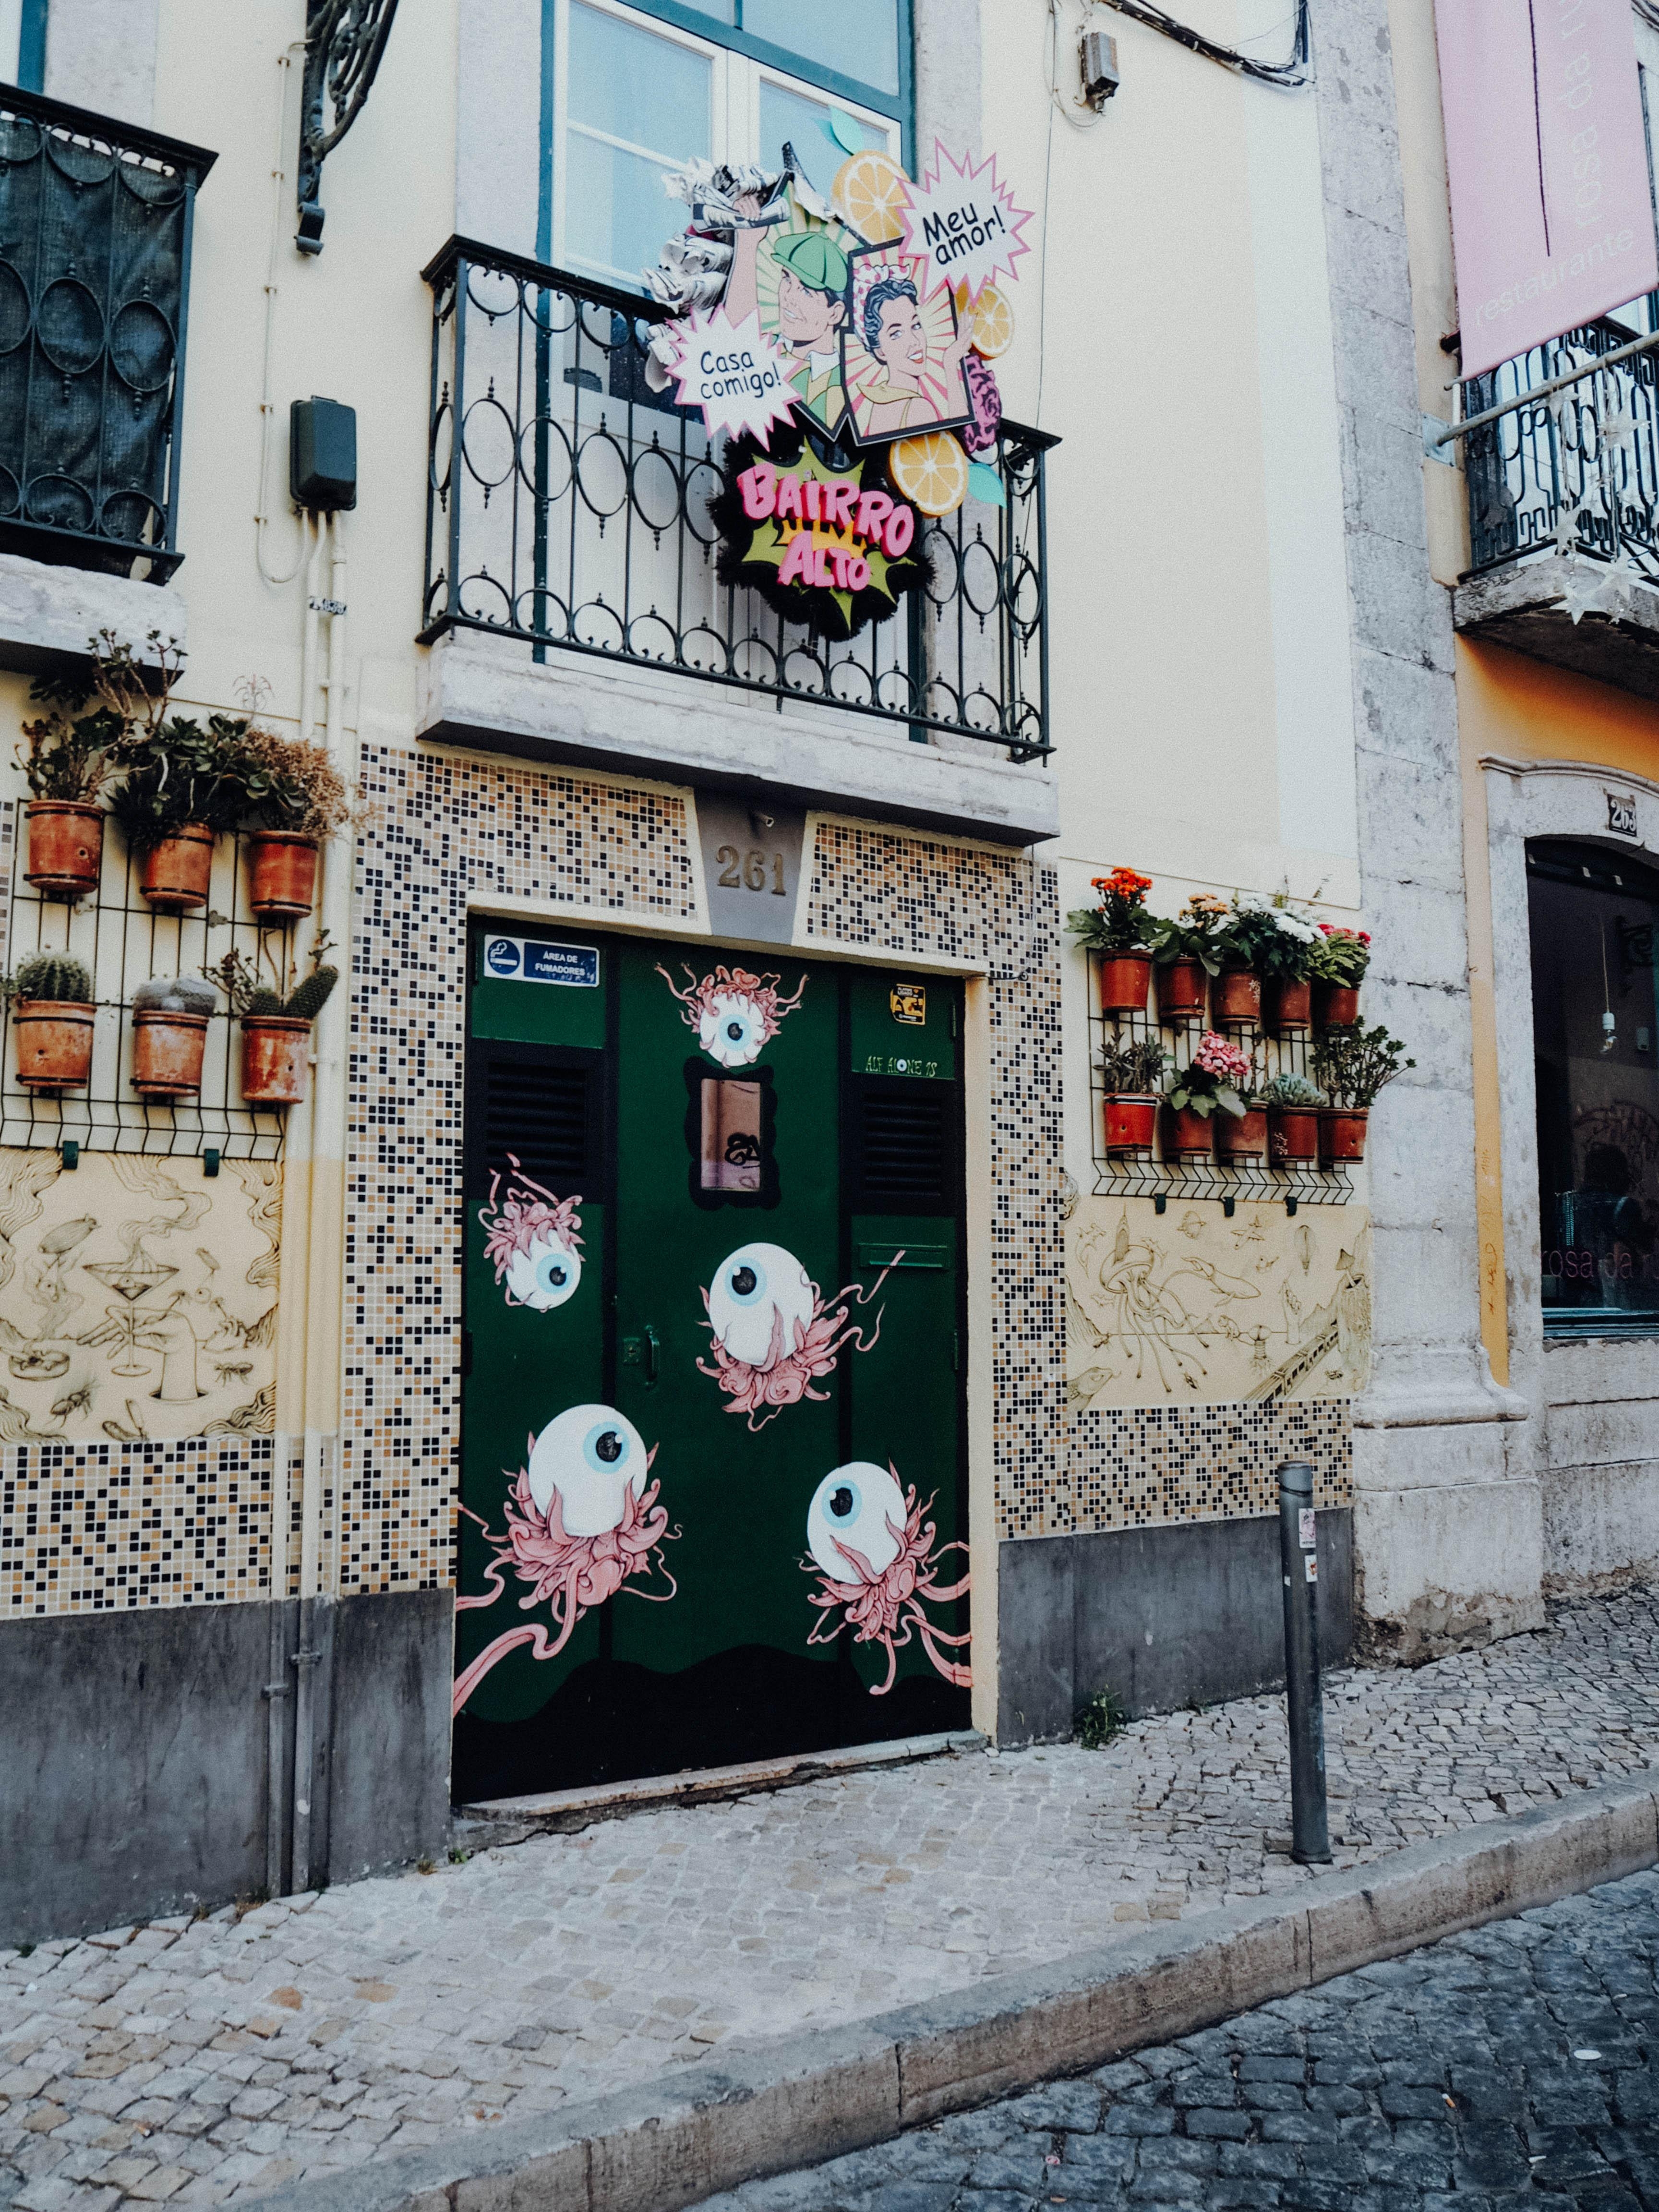 Coole Streetart gibt's in der Altstadt von Lissabon #travel #portugal #lissabon #streetart